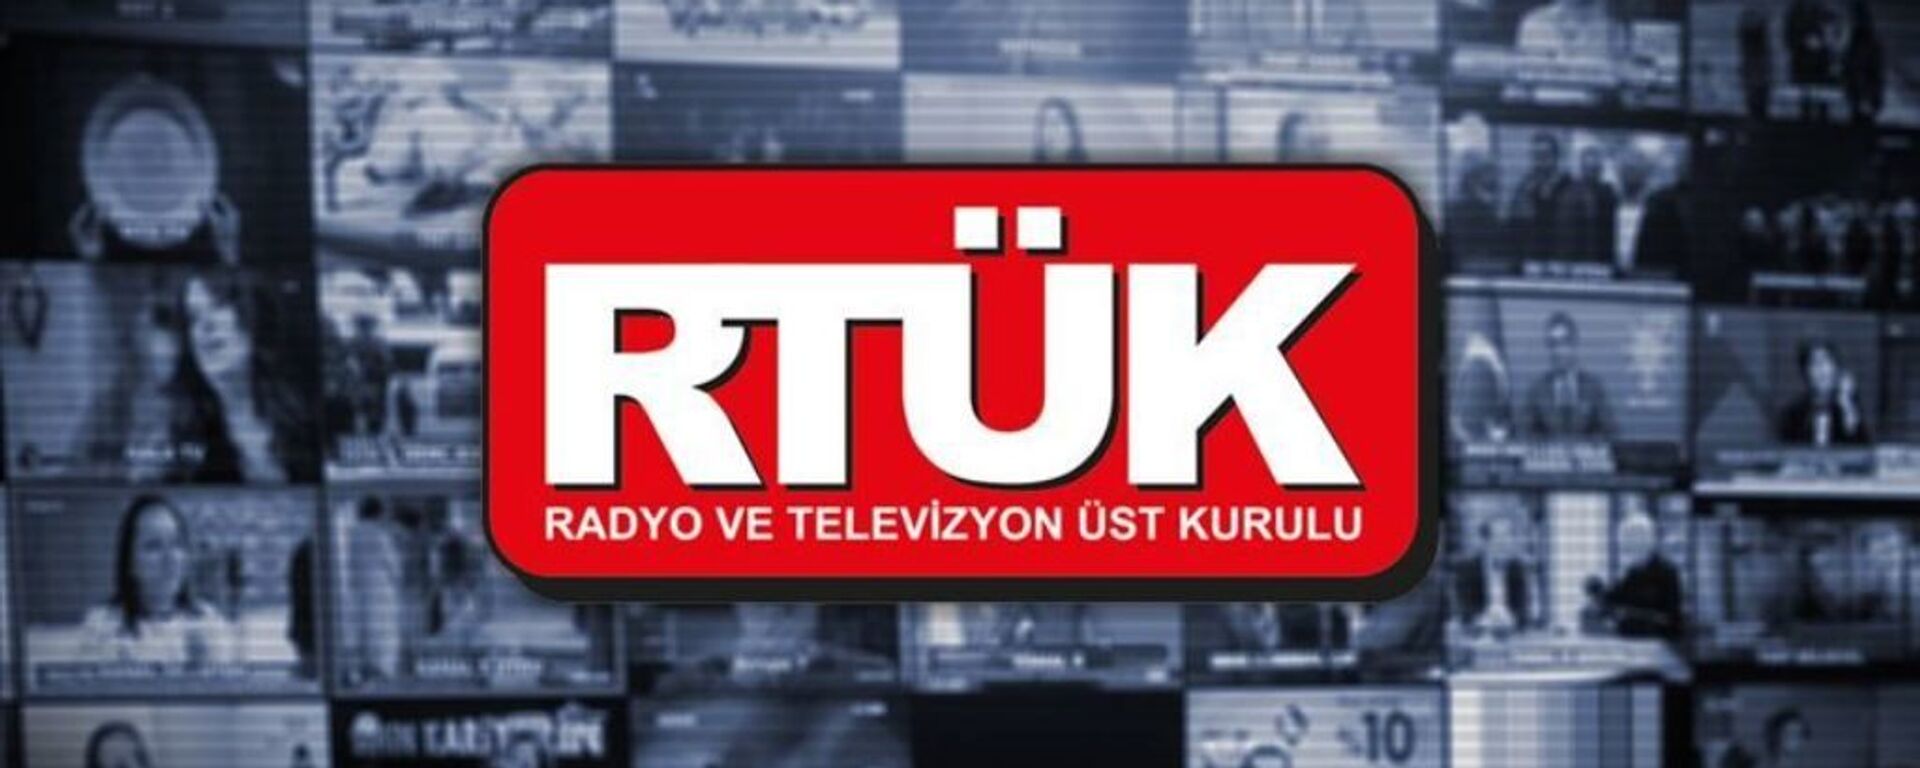 RTÜK - Sputnik Türkiye, 1920, 04.06.2020